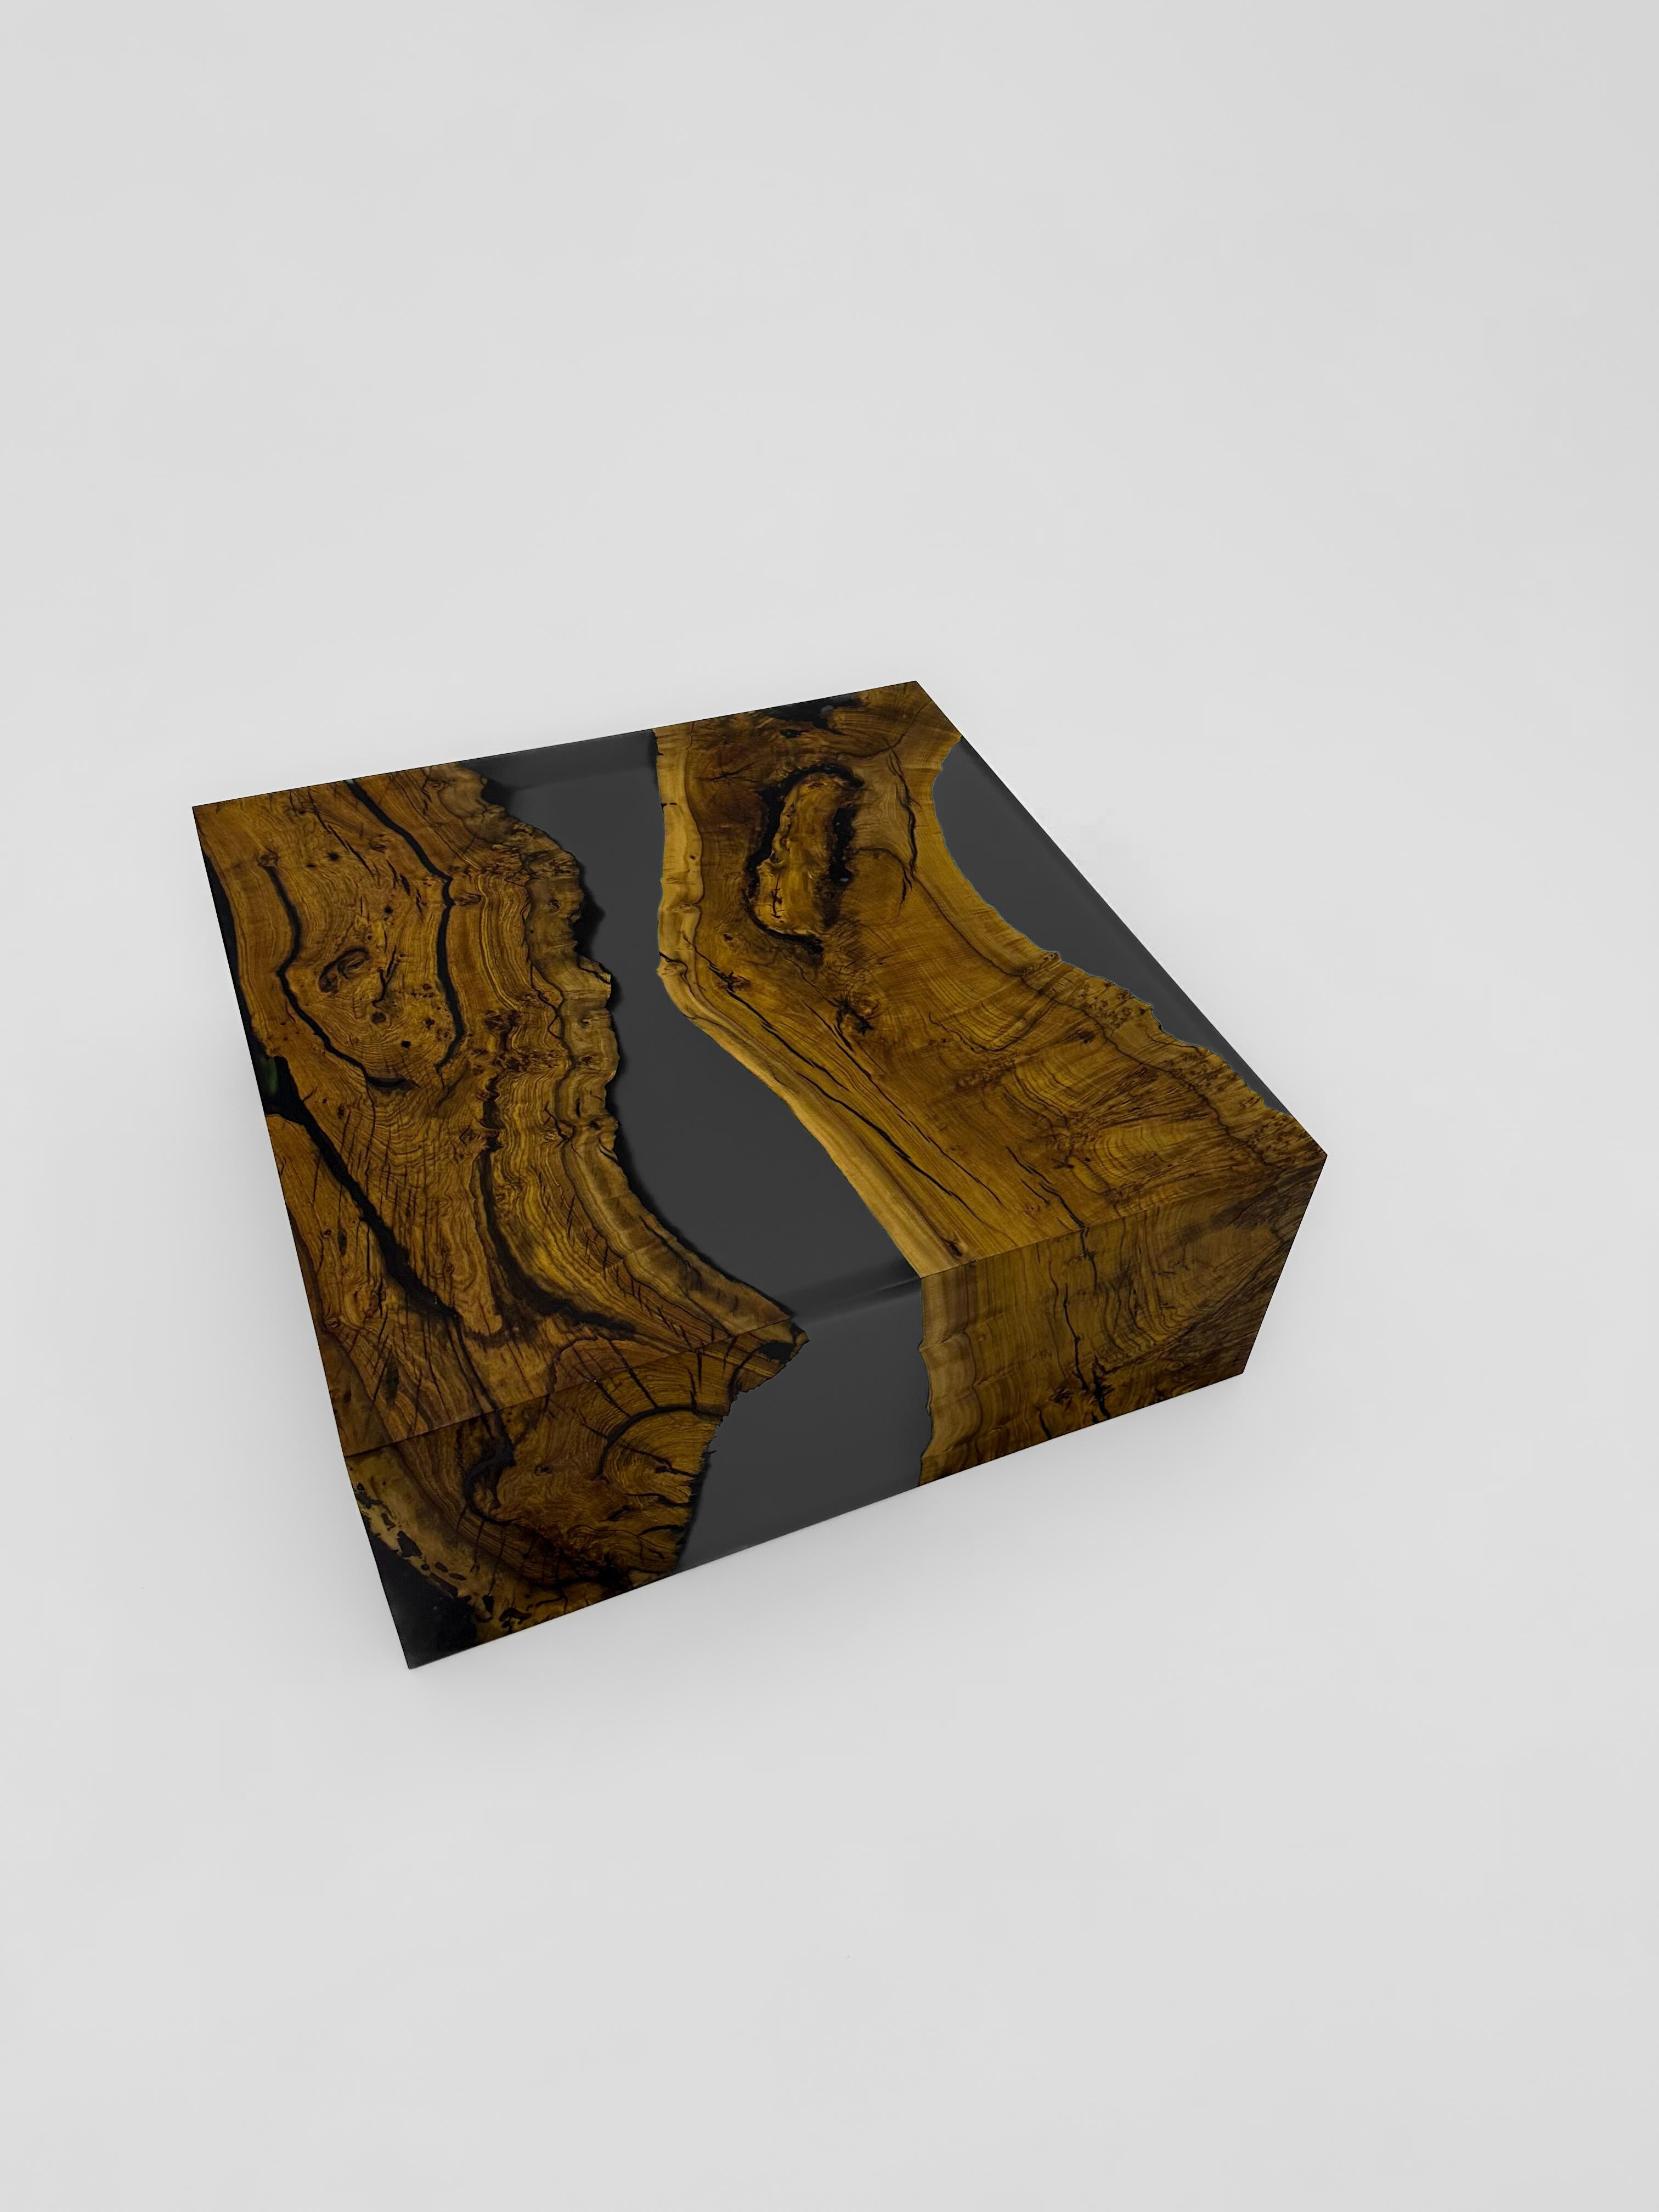 Wasserfall Walnuss Holz Epoxy Couchtisch

Wir präsentieren unseren Epoxy-Wasserfalltisch - ein wahres Beispiel für Handwerkskunst und Eleganz. Dieses außergewöhnliche Möbelstück ist mehr als nur ein Couchtisch; es ist ein Statement für raffinierten